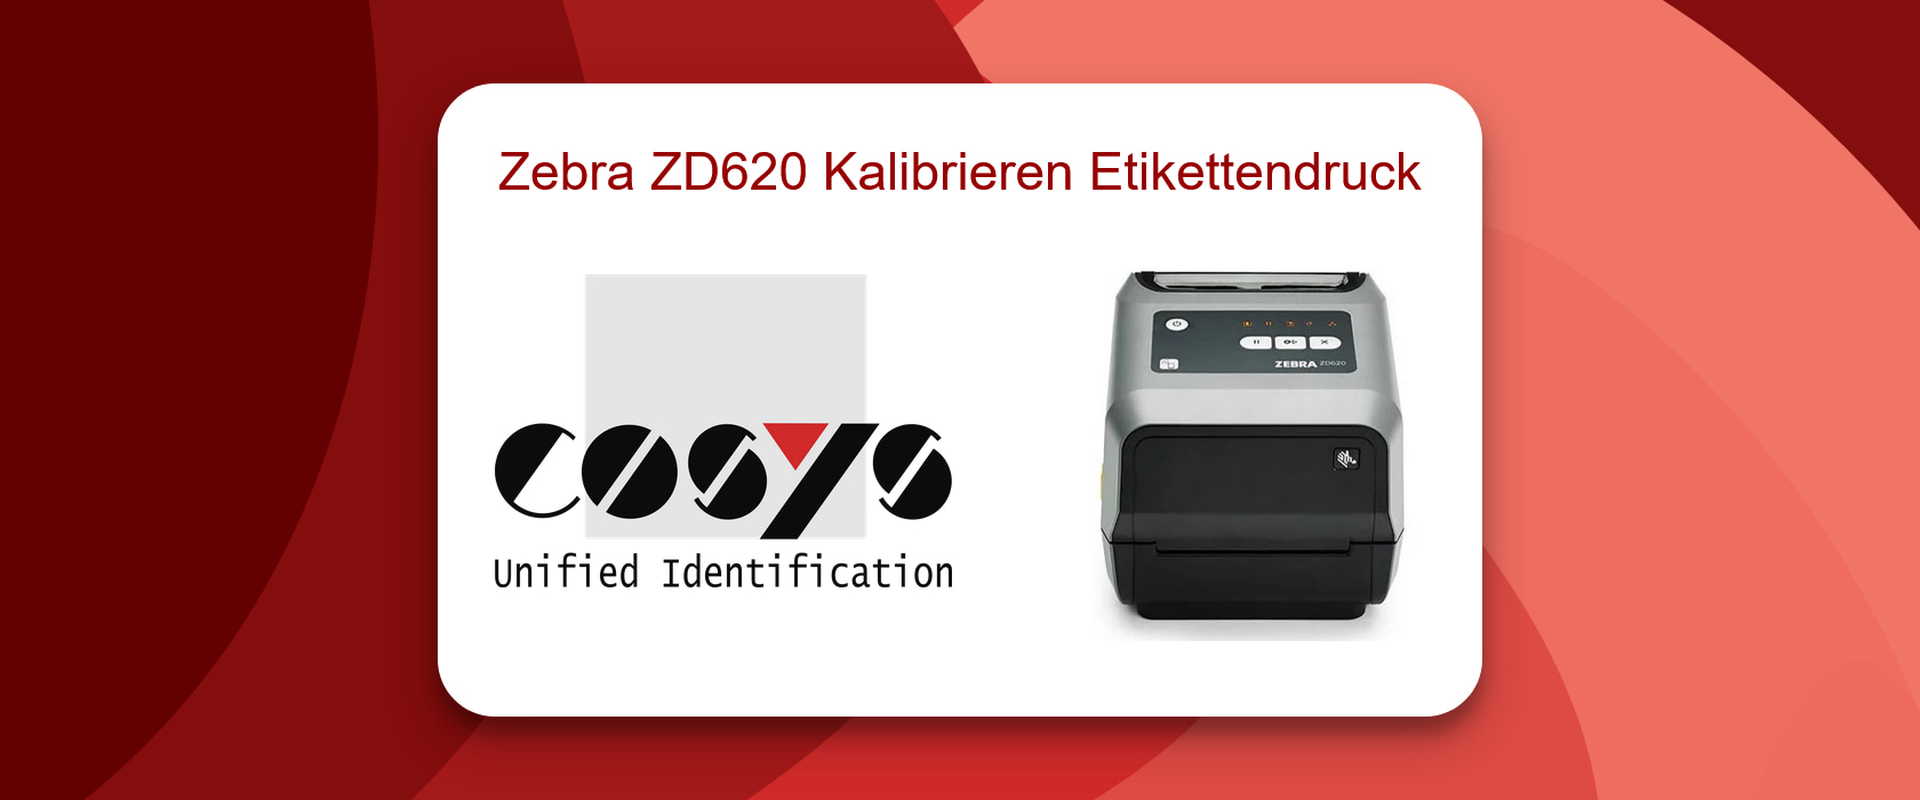 Kalibrierung eines Zebra ZD620 Druckers